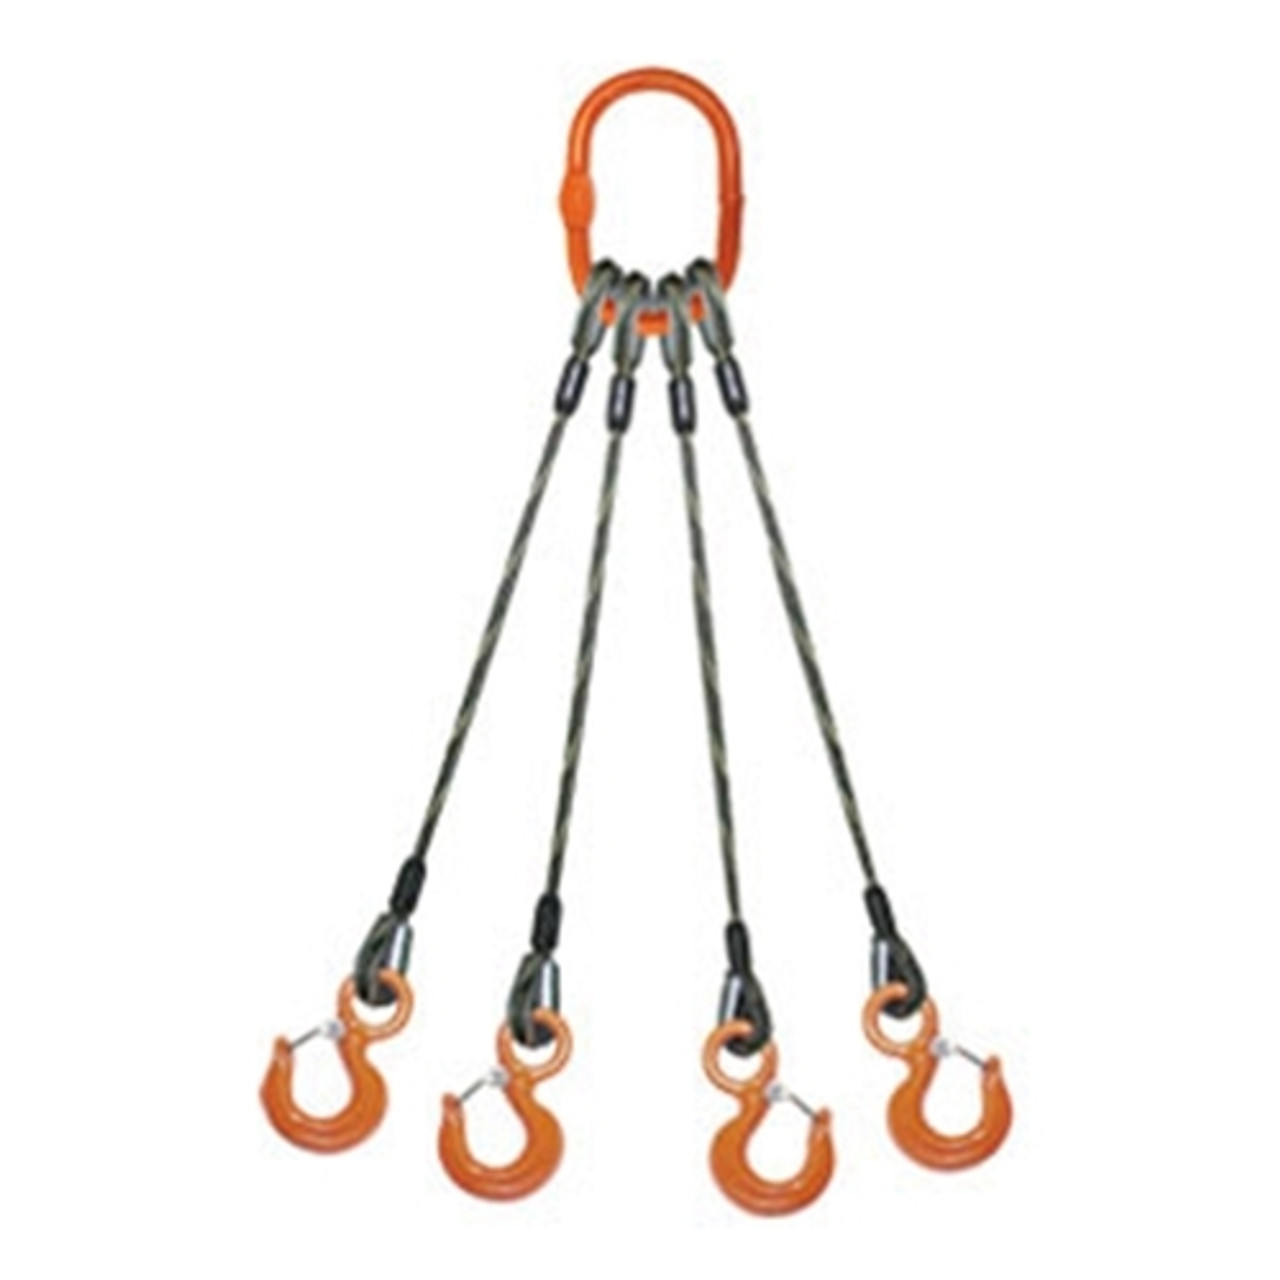 Talon -DO 146,000 lbs., 1-1/2 Domestic Wire Rope 4-Leg Bridle